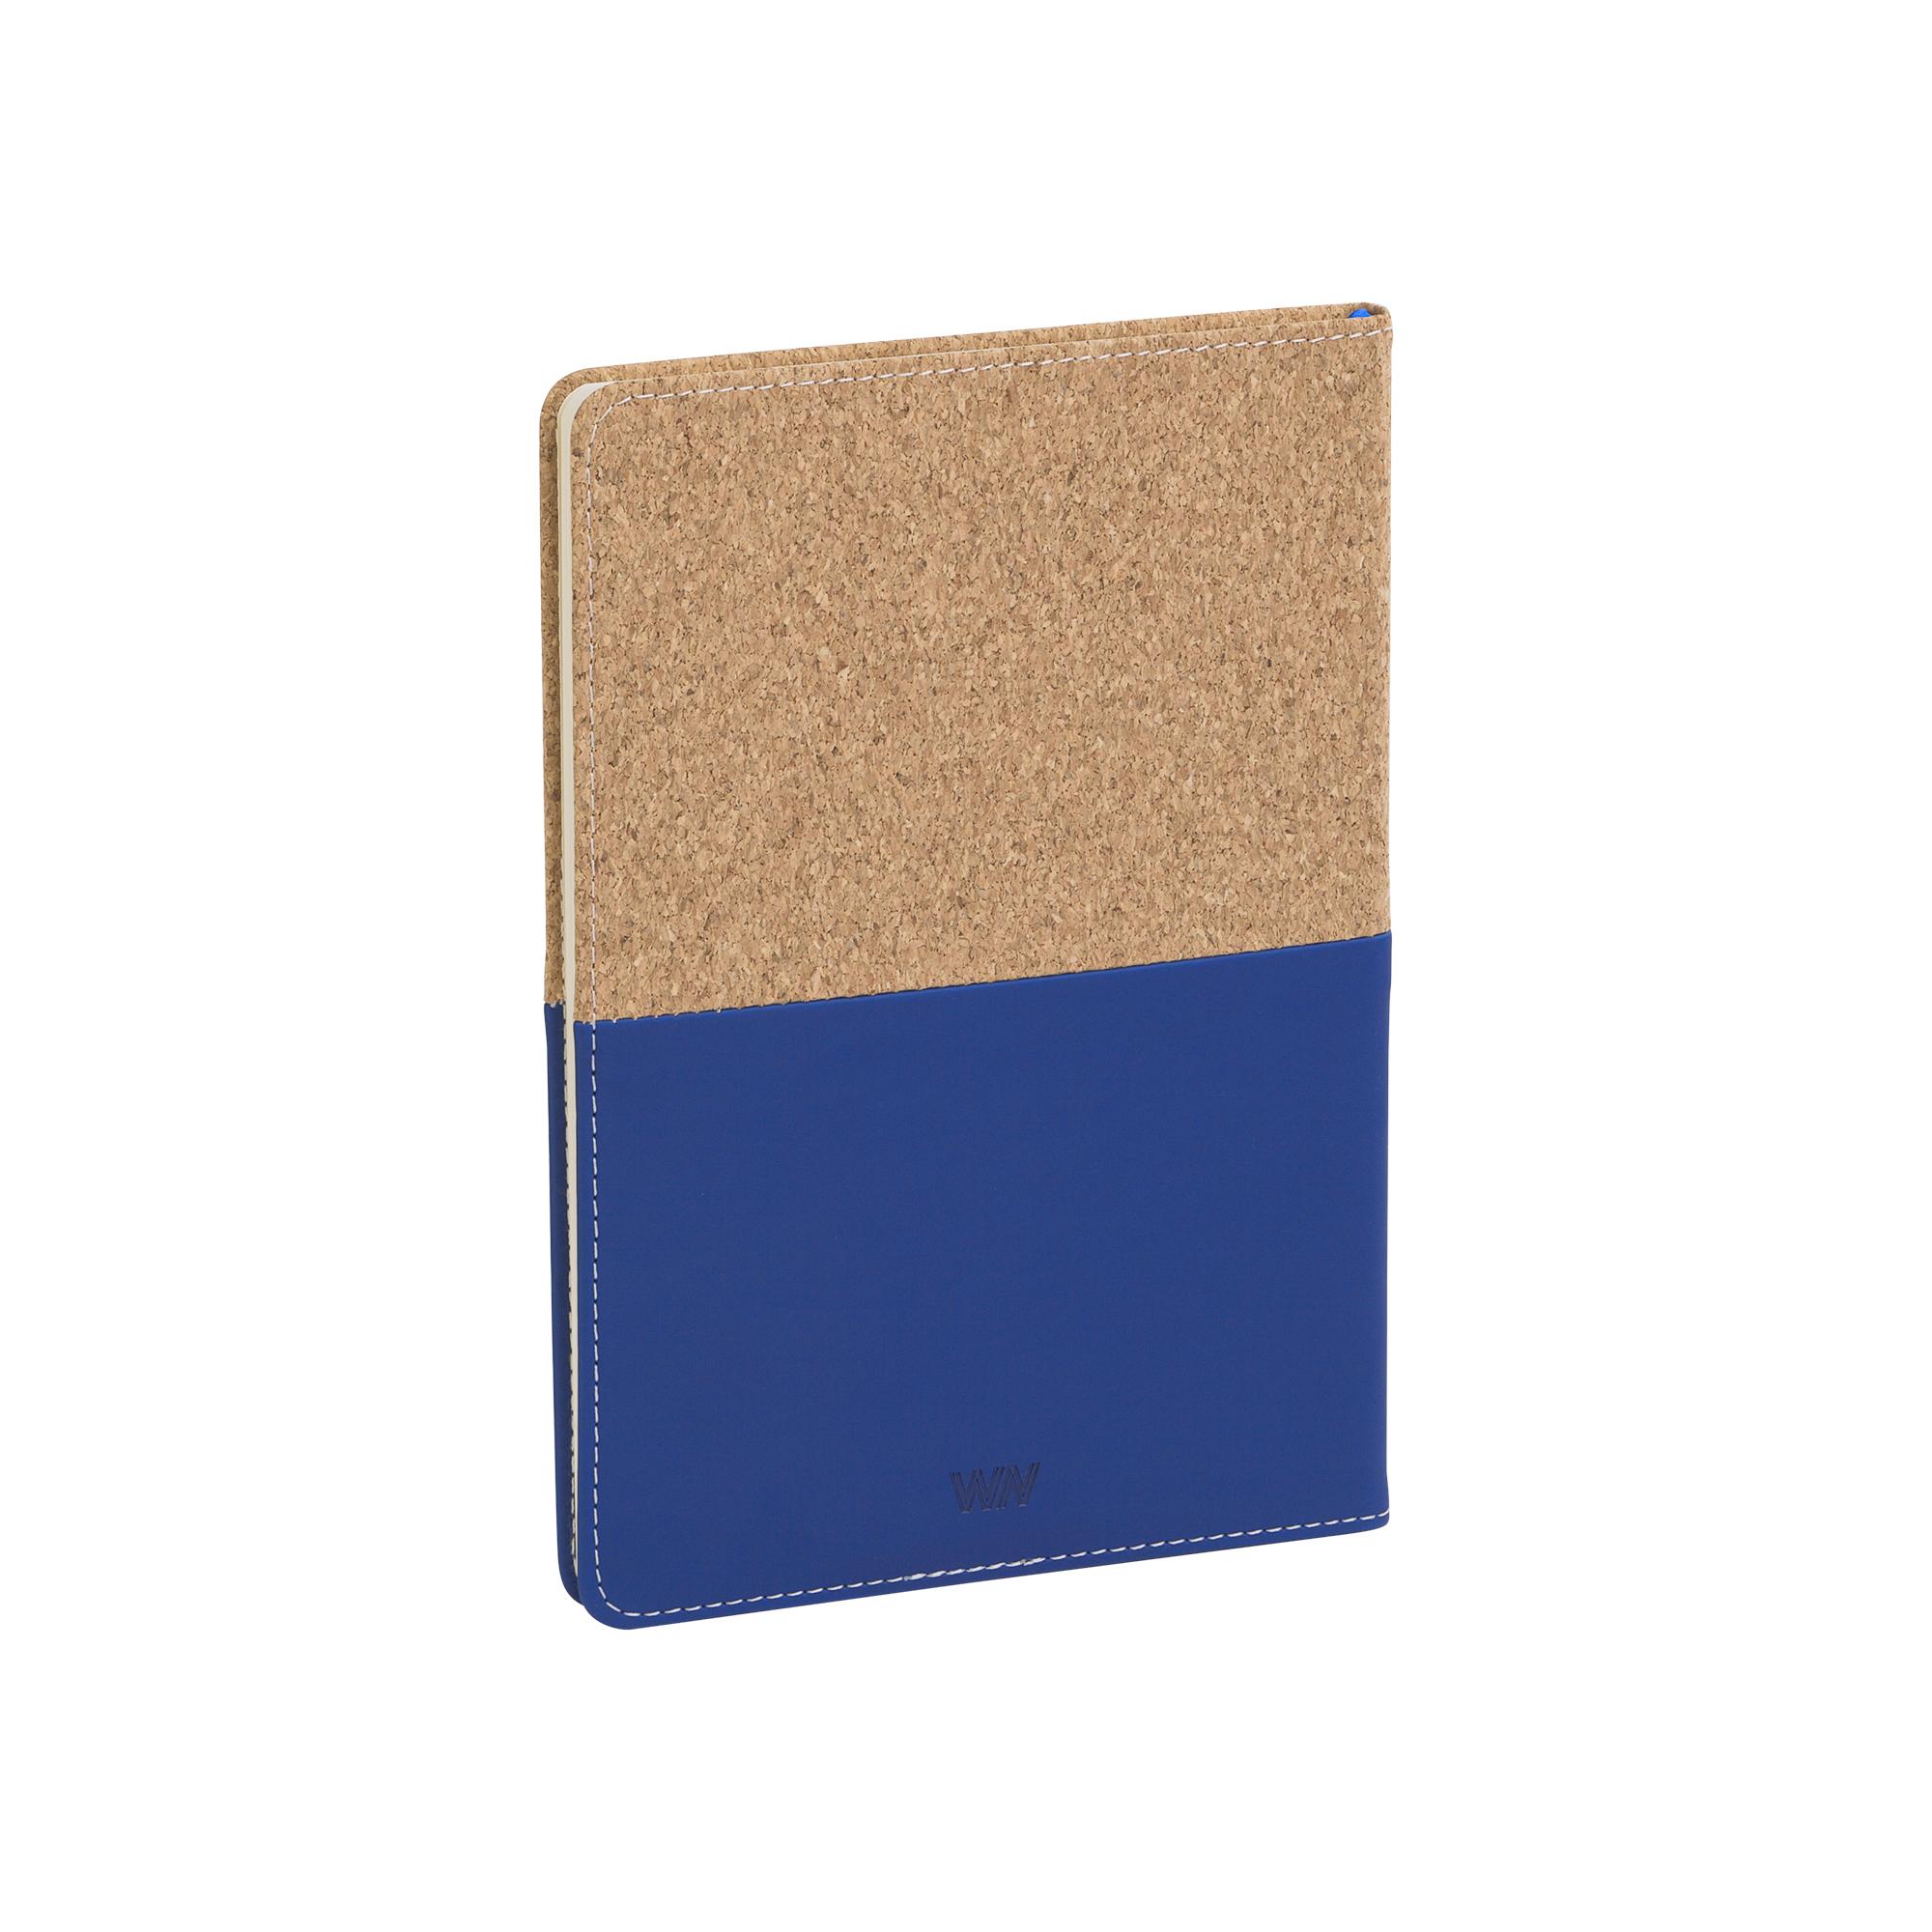 Блокнот "Фьюджи", формат А5, покрытие soft touch+пробка, цвет синий, фото 2